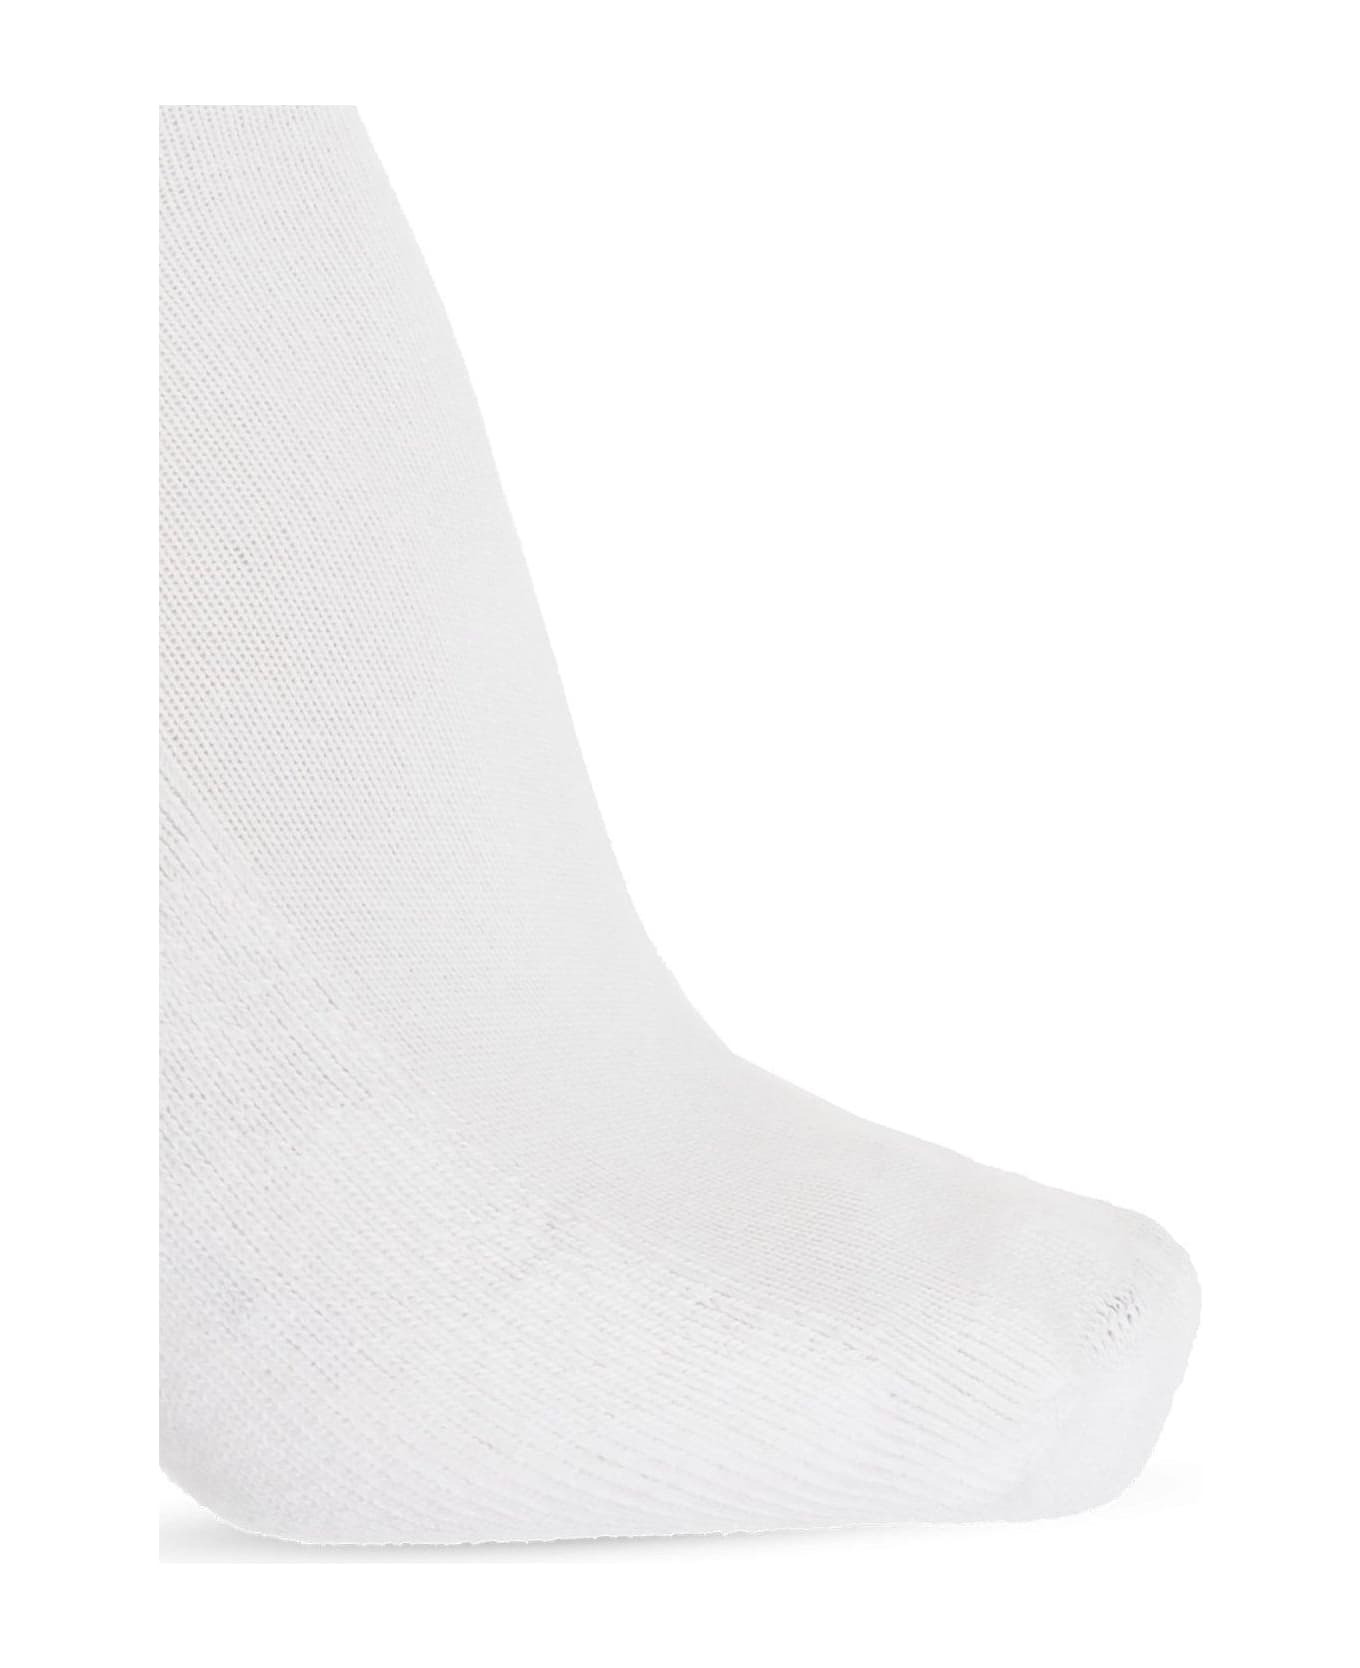 Alexander McQueen Logo Skull Intarsia Knitted Socks - WHITE/BLACK 靴下